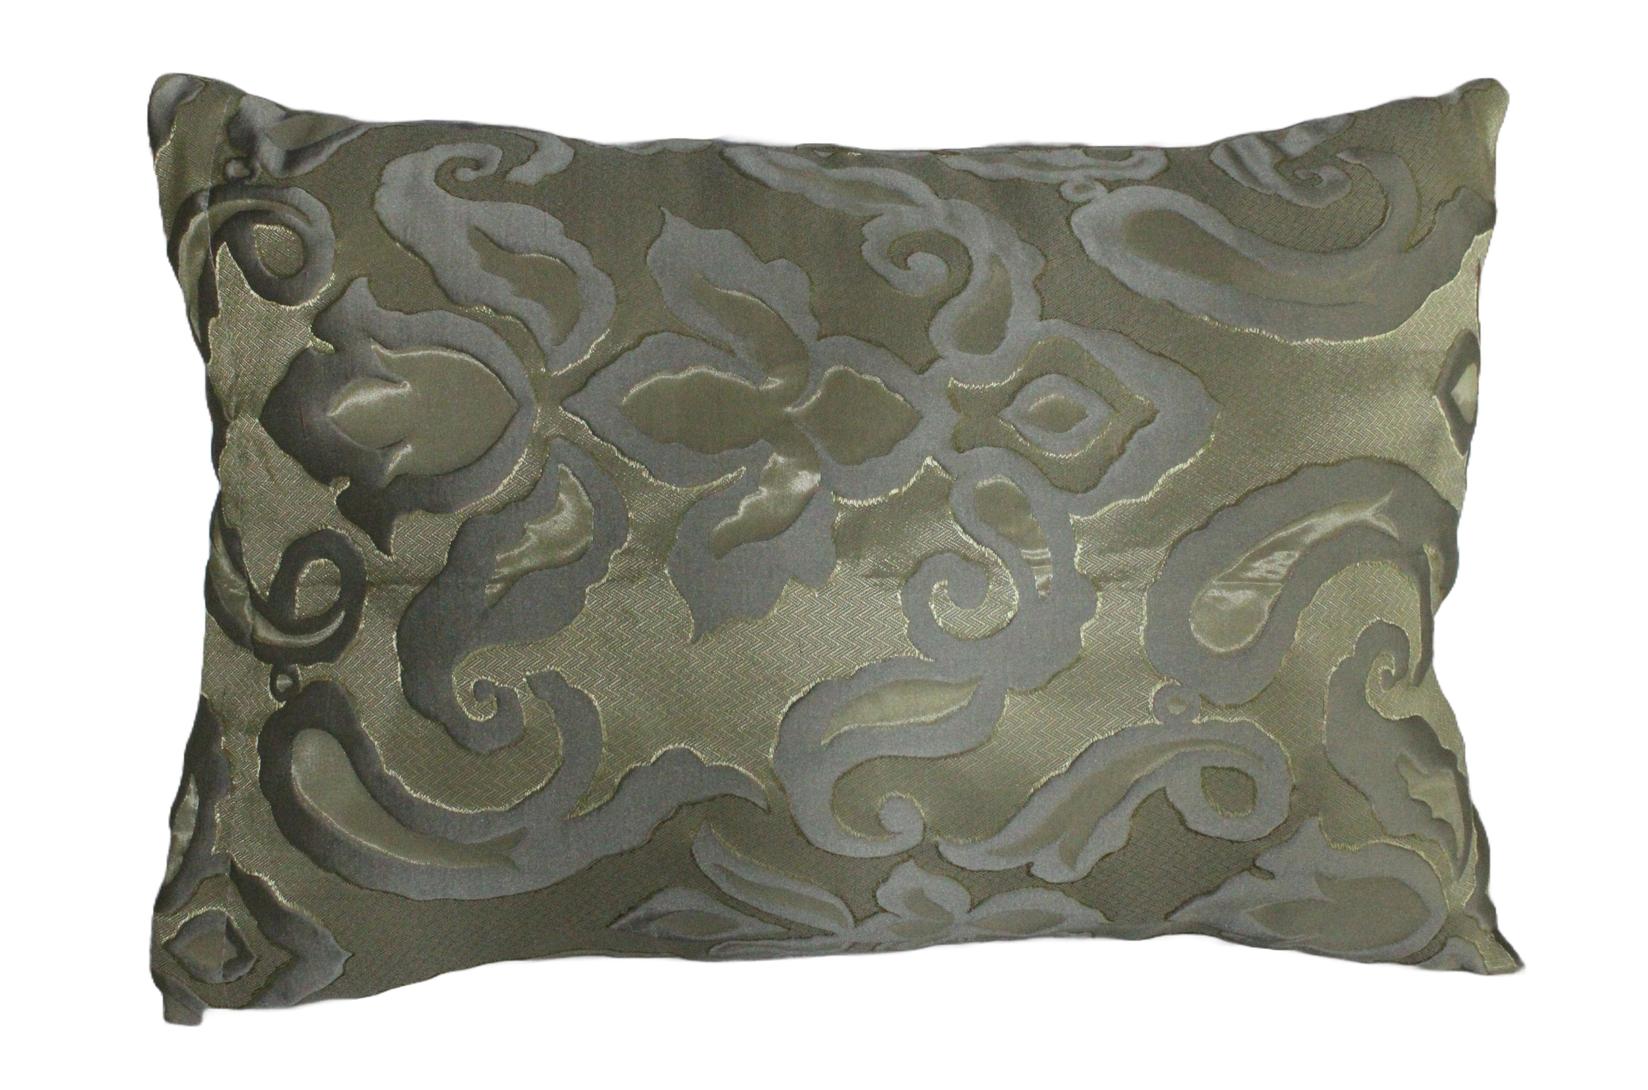 Sajonara Exkluziv Dekorativni jastuk, 40x40cm, Drap, Cveće, Zlatni